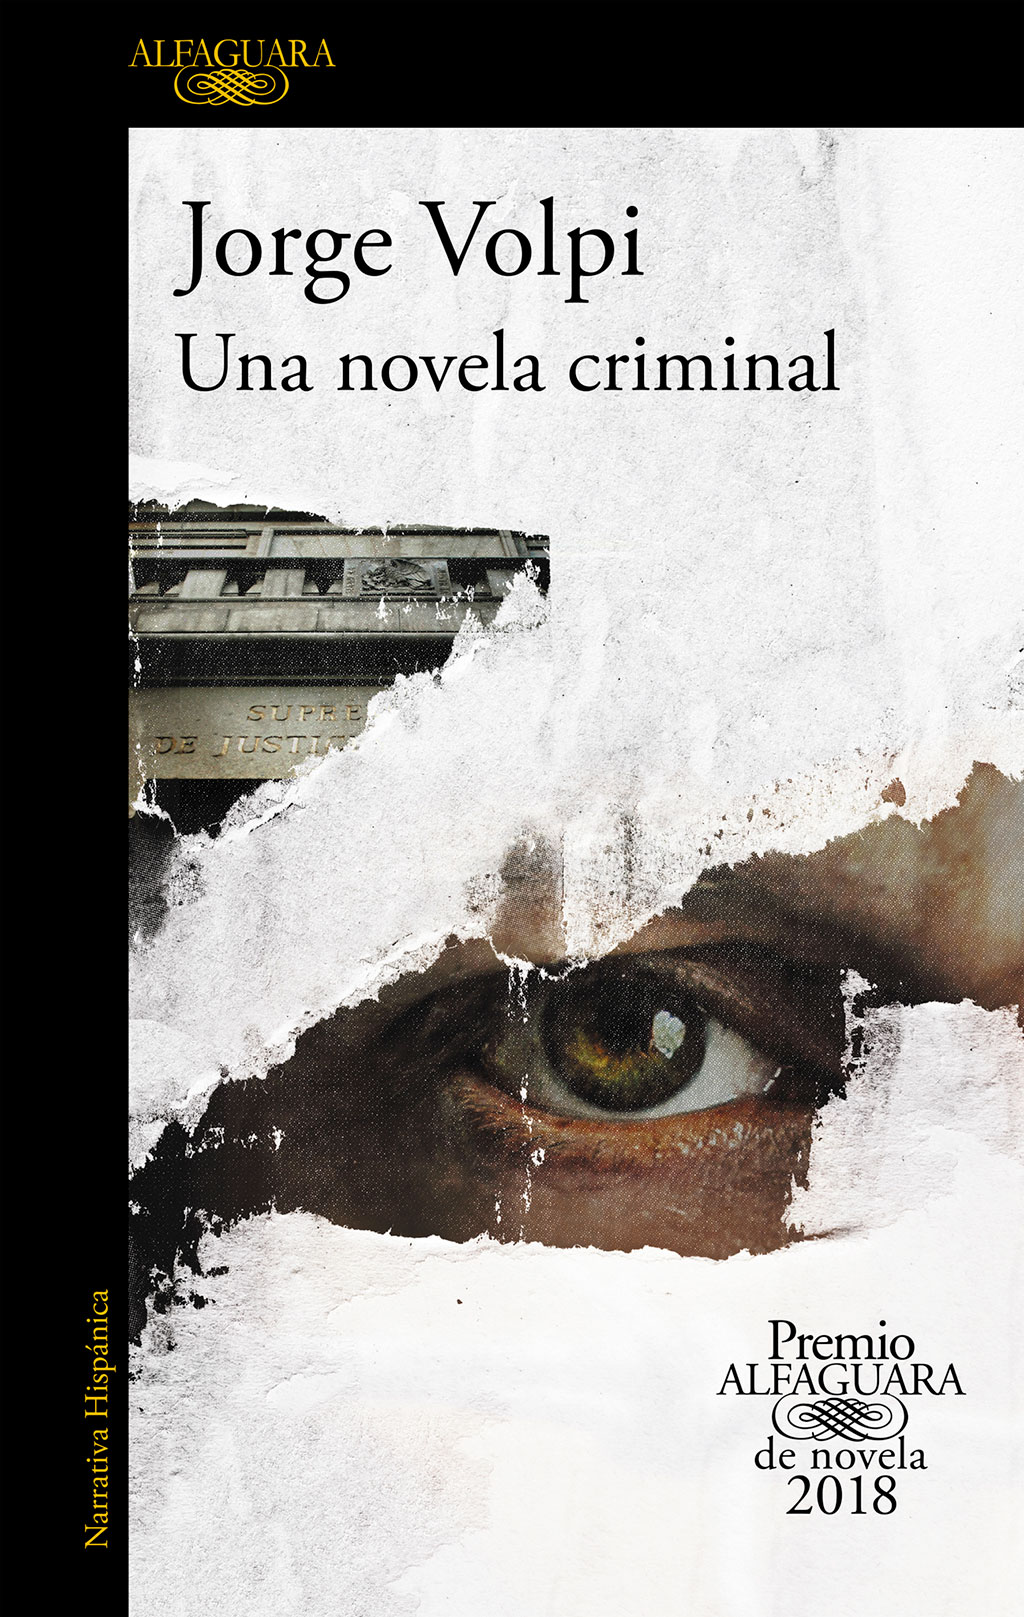 Jorge Volpi. Una novela criminal.